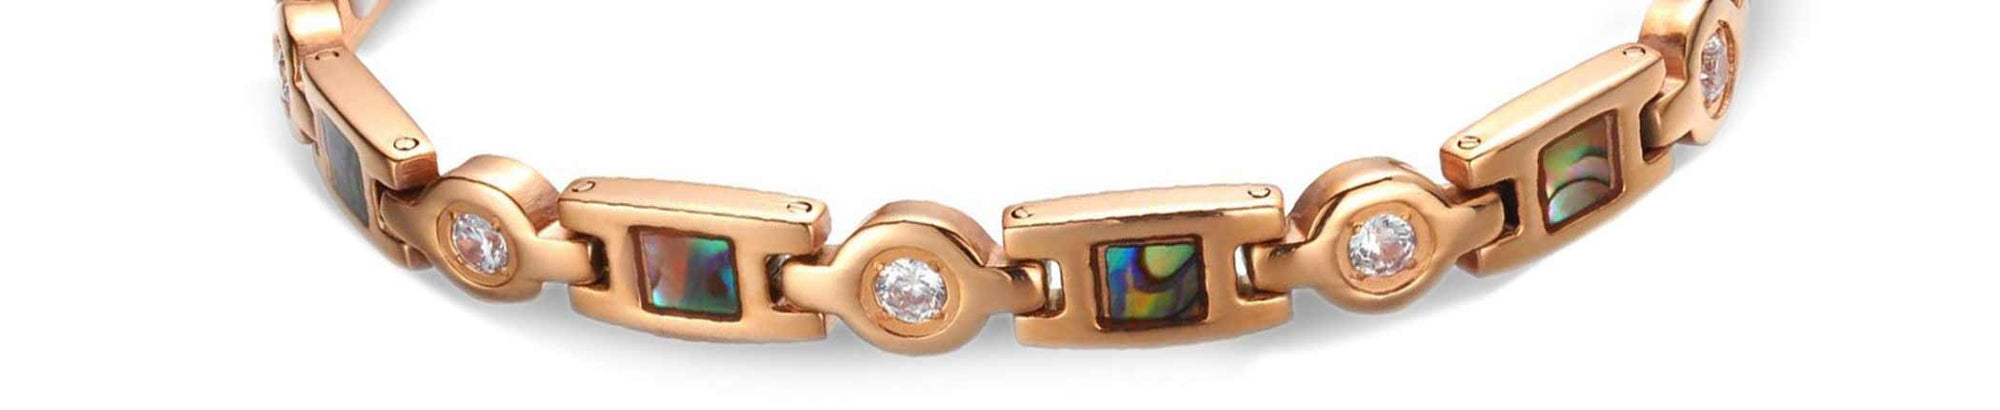 Womens Copper Bracelet; Our top 10